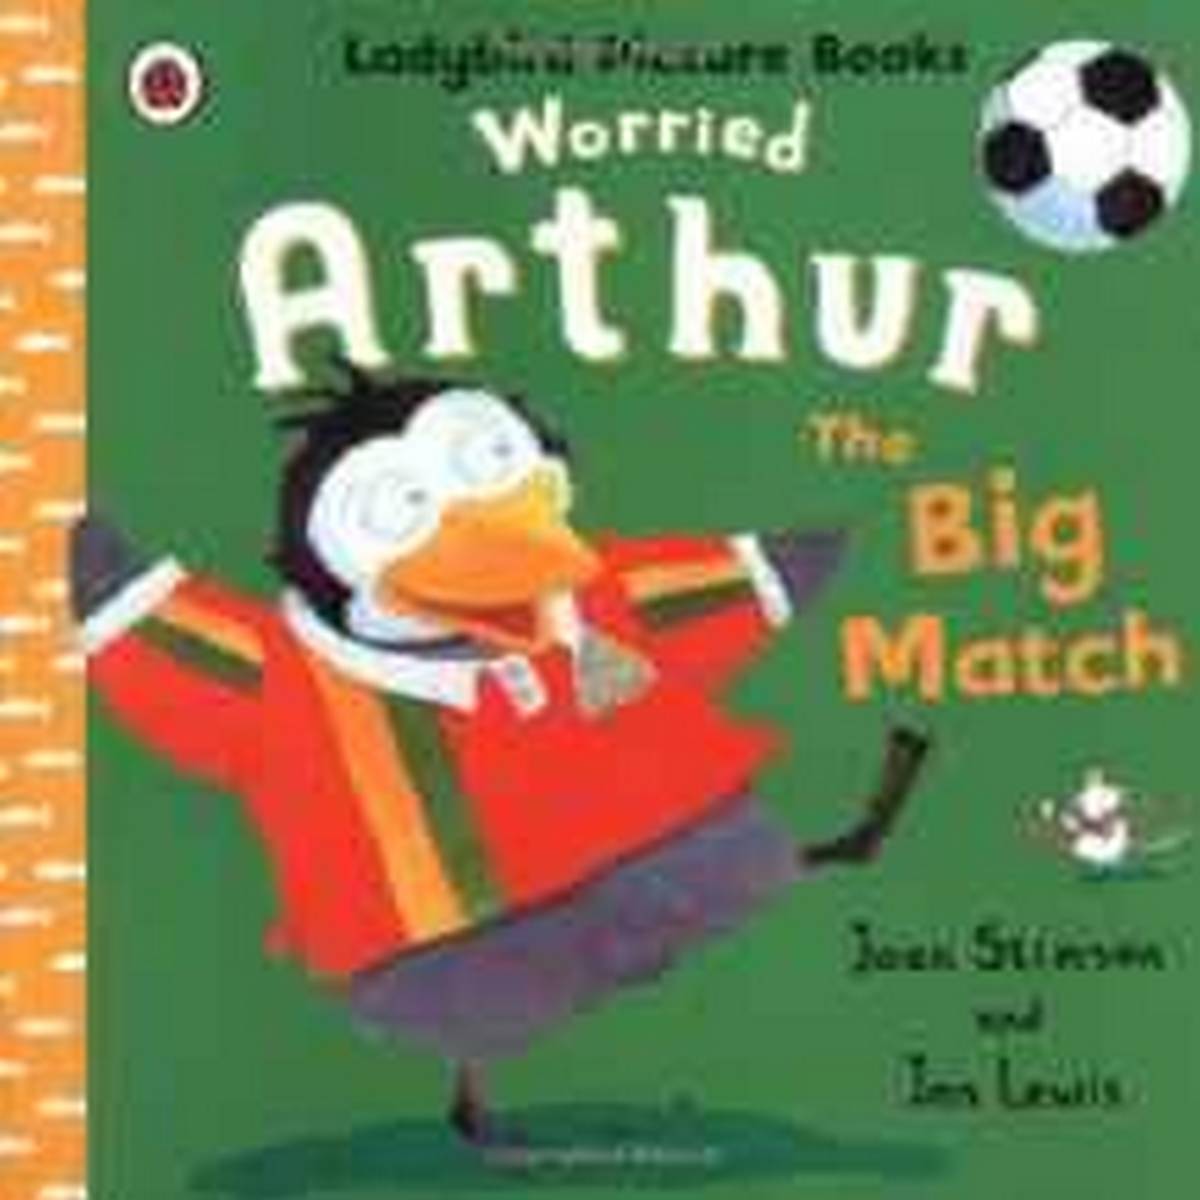 Worried Arthur: The Big Match